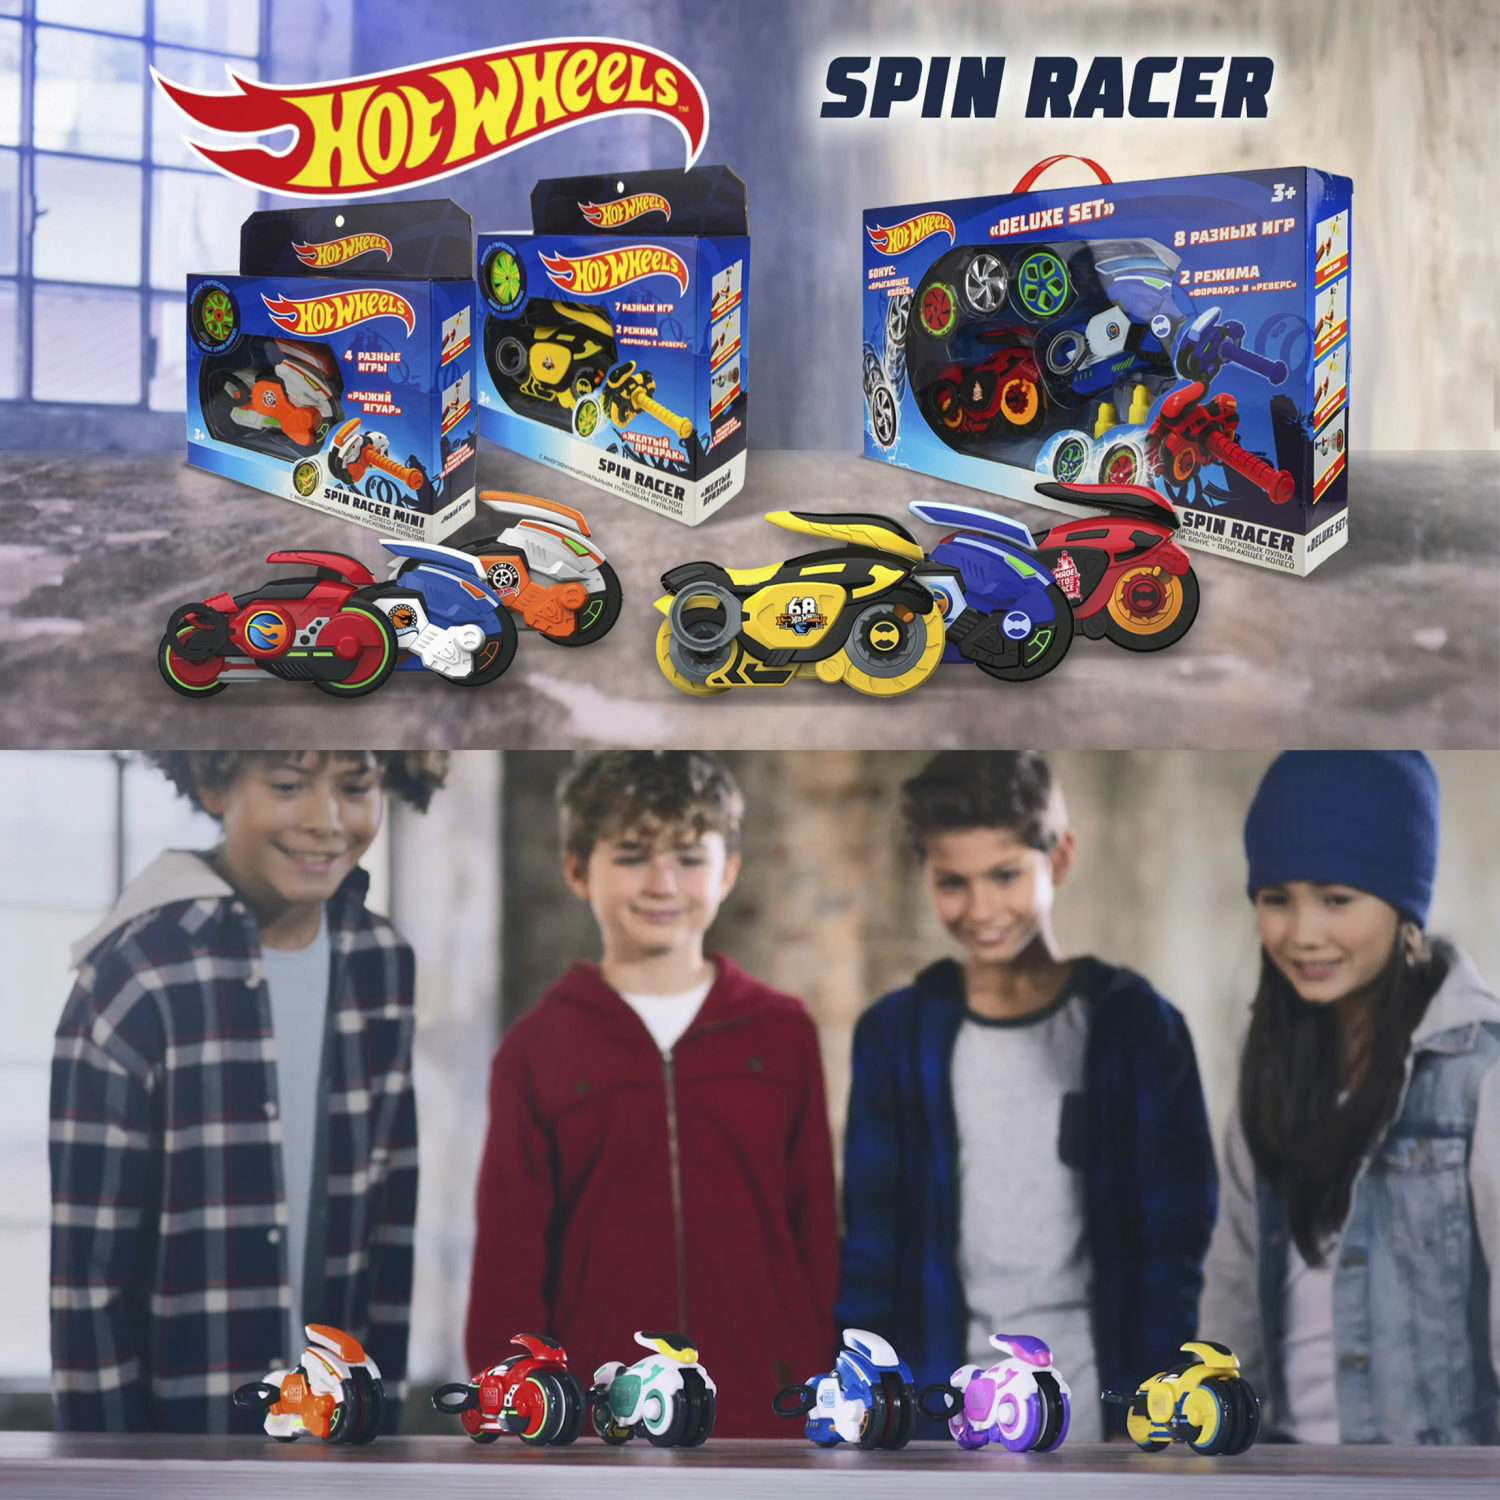 Игровой набор Hot Wheels Spin Racer Синяя Молния игрушечный мотоцикл с колесом-гироскопом Т19373 - фото 3